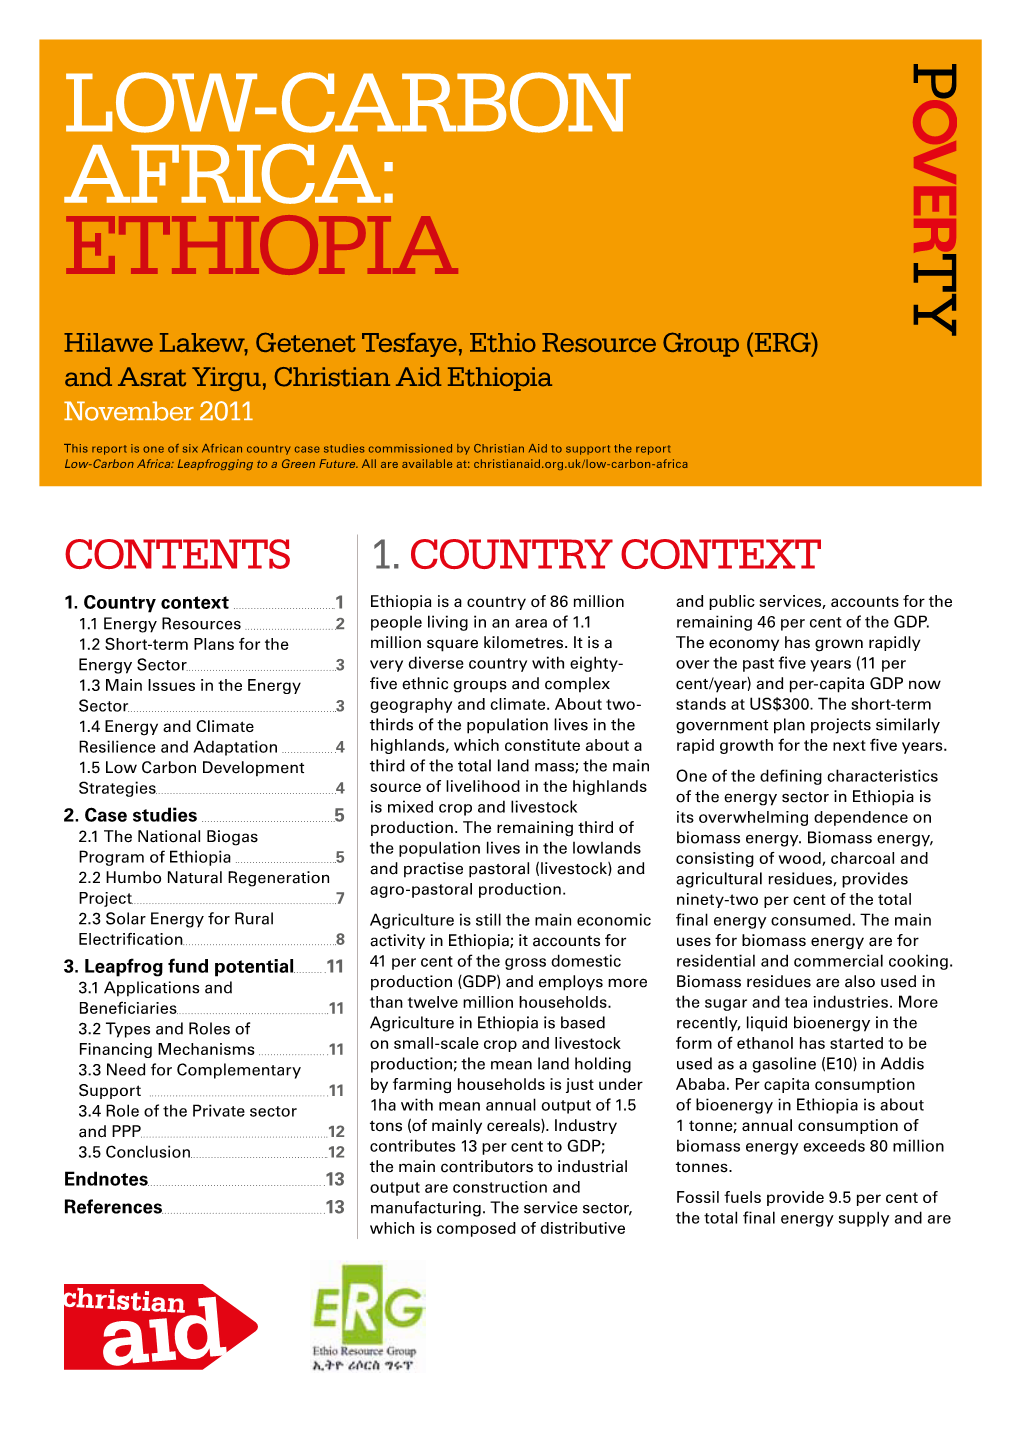 Low-Carbon Africa: Ethiopia